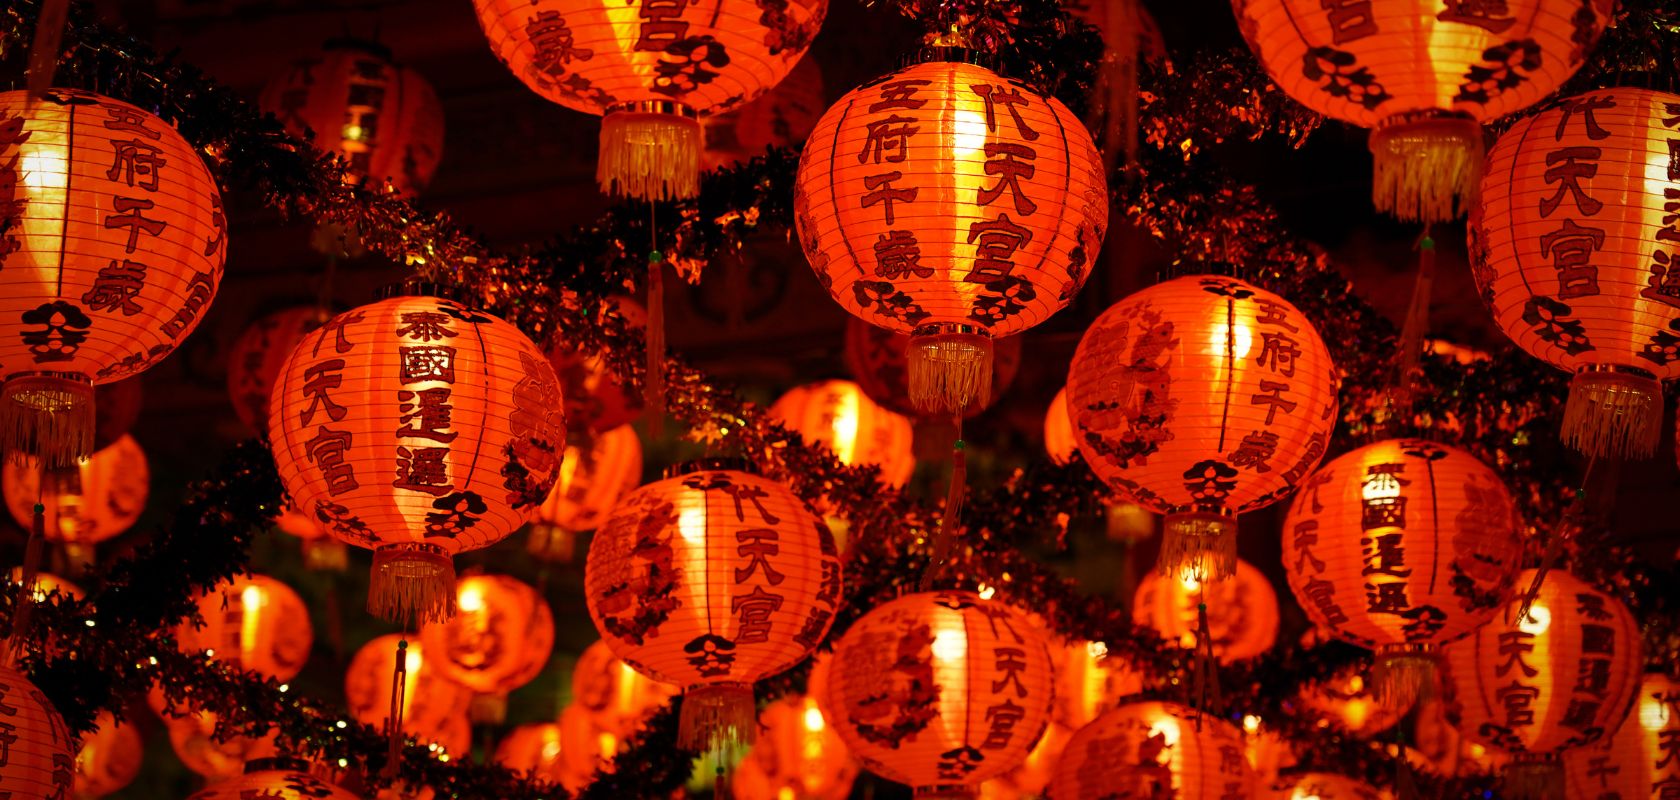 Chinese nieuwjaarstraditie: het lantaarnfeest